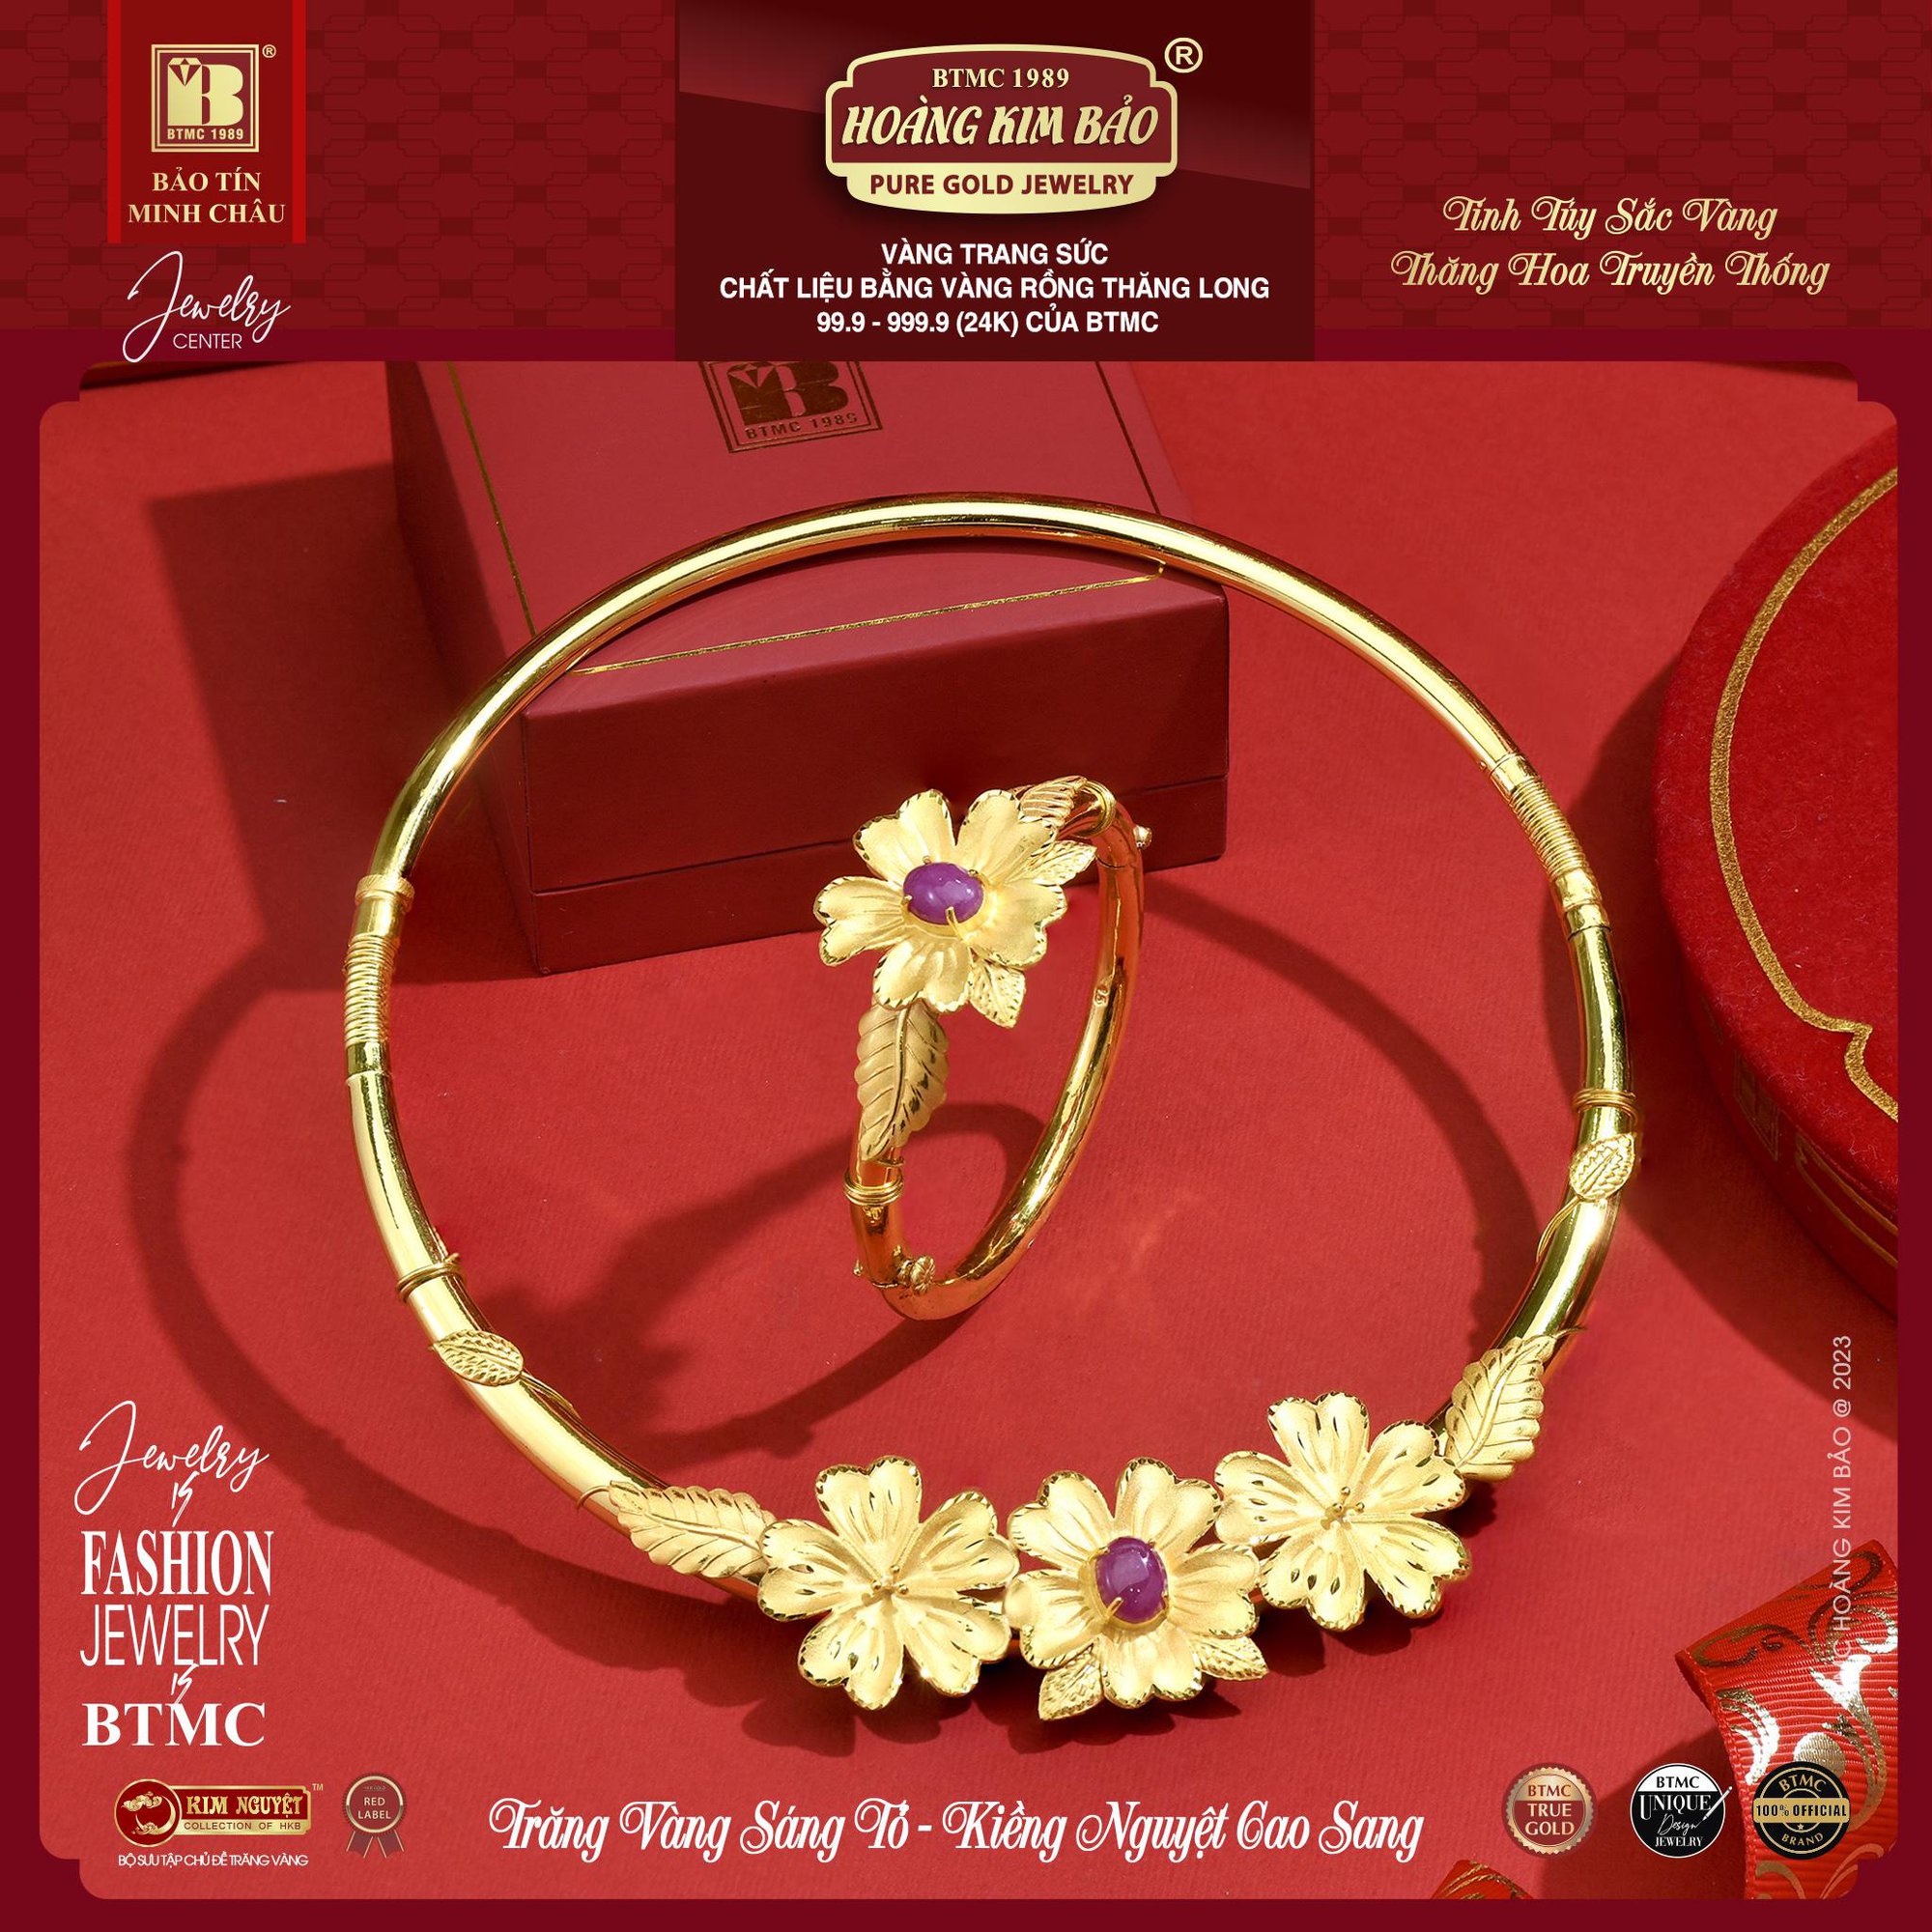 Tận hưởng cơ hội “mua trang sức cưới vàng trúng quà sang” đợt 2 từ Bảo Tín Minh Châu - ảnh 2